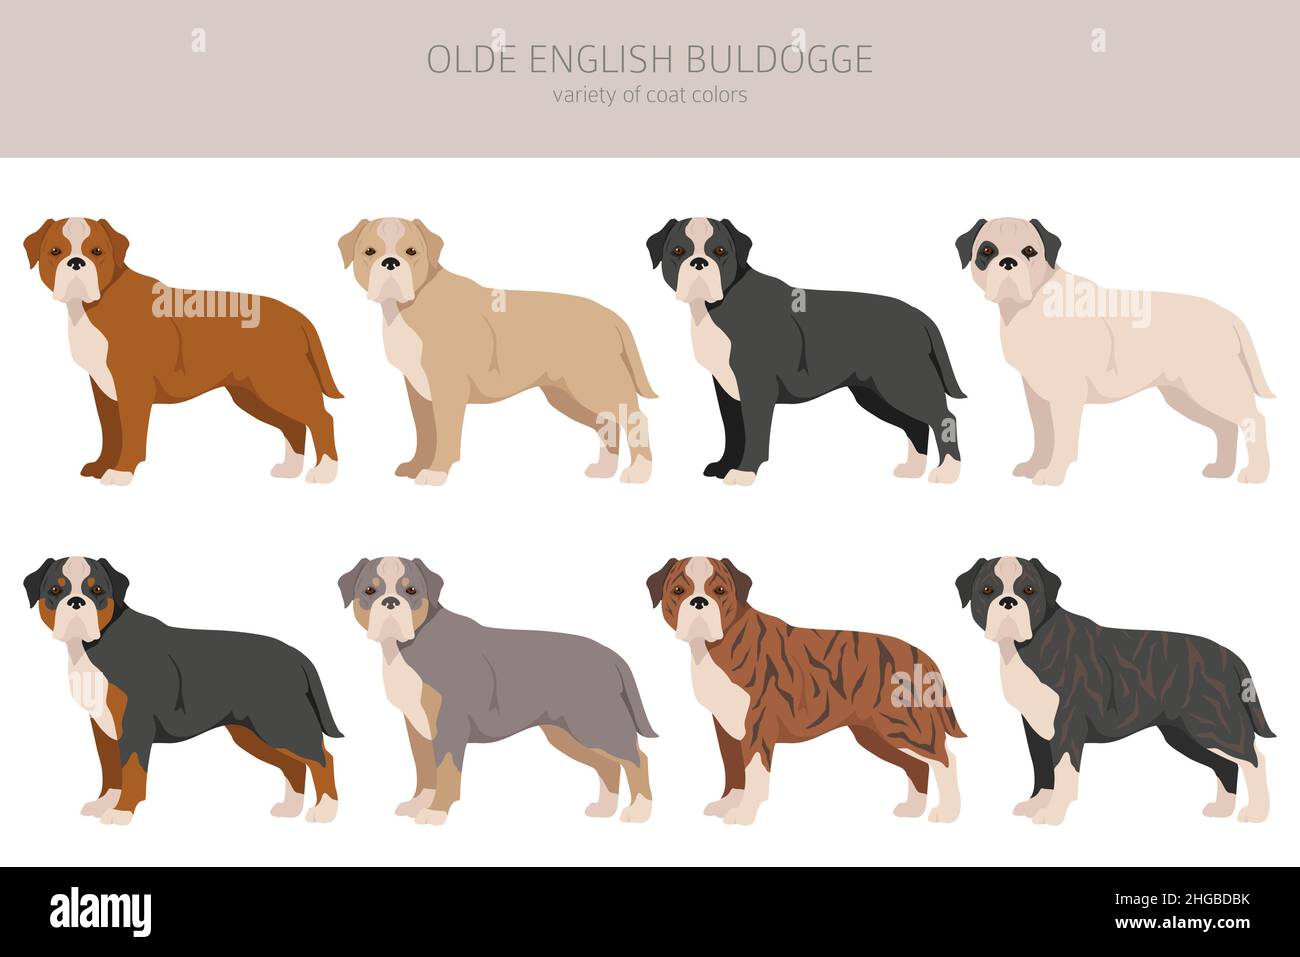 Olde English Bulldogge, Leavitt Bulldog clipart.Différentes poses, ensemble de couleurs de pelage.Illustration vectorielle Illustration de Vecteur